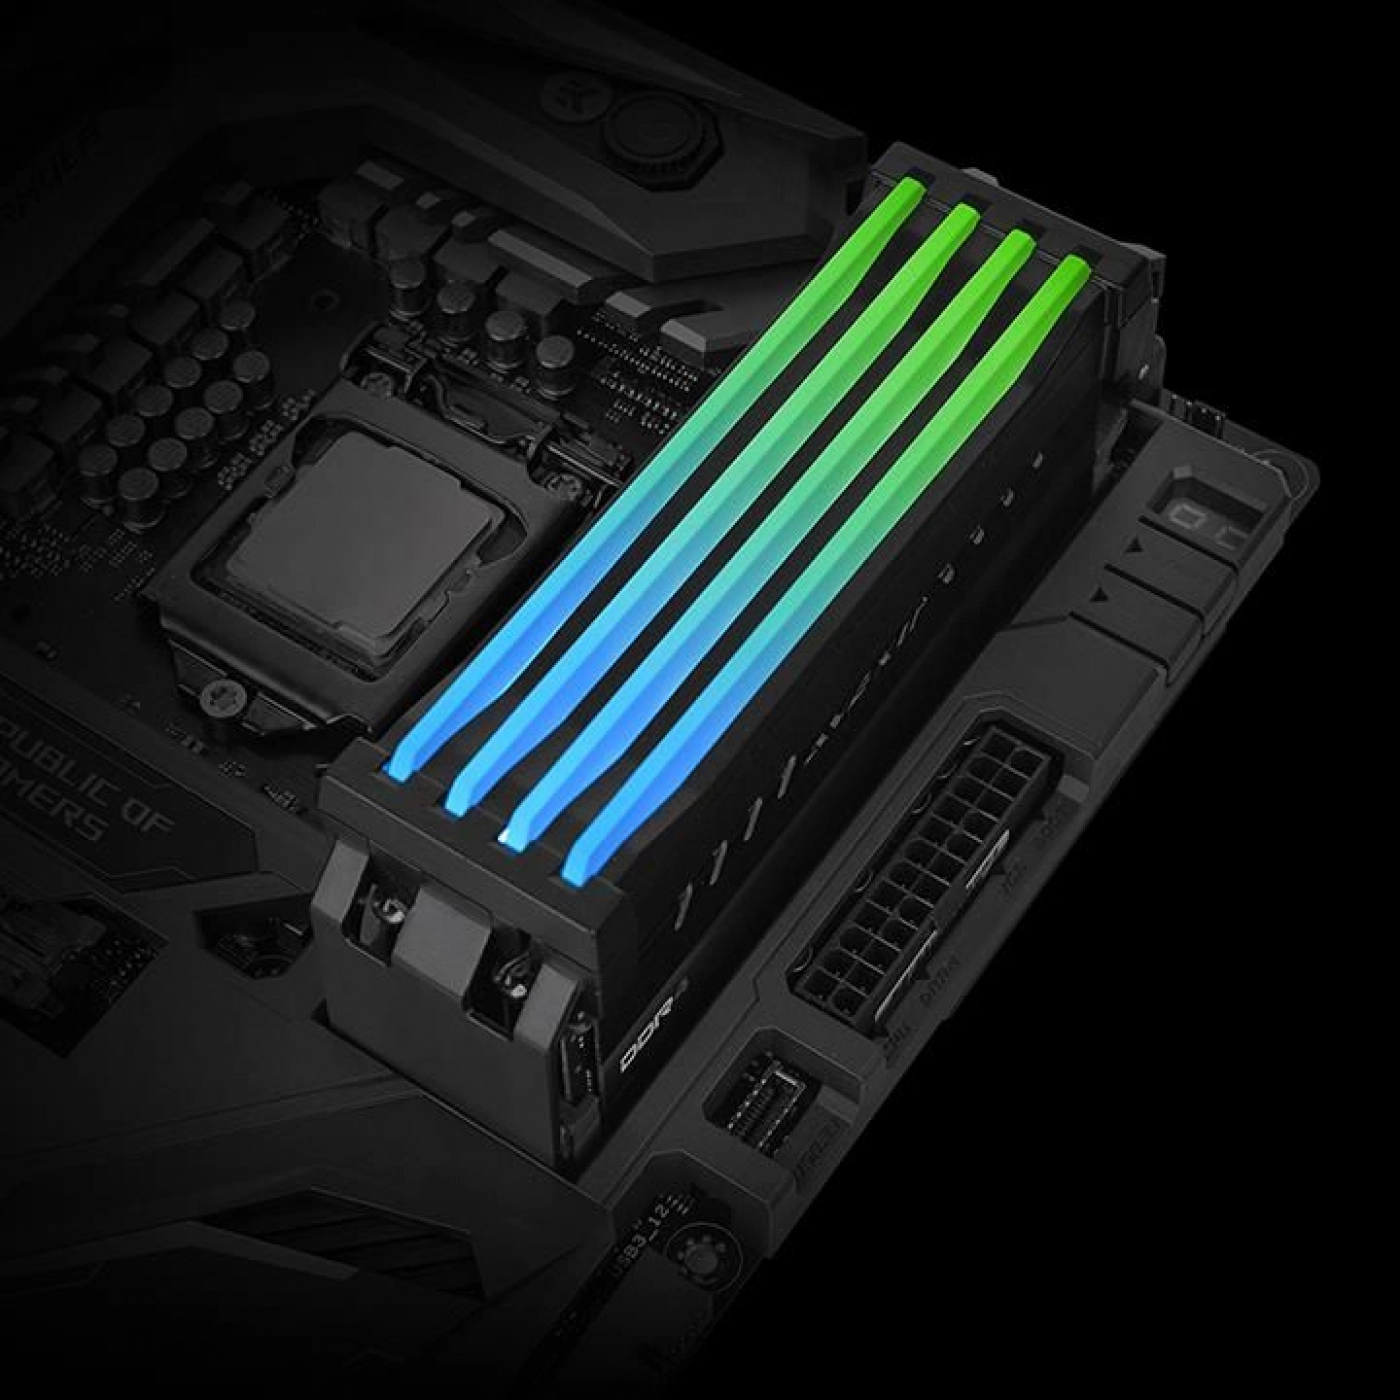 Купить Набор RGB-подсветки ОЗУ Thermaltake S100 DDR4 Memory Lighting Kit (CL-O021-PL00SW-A) - фото 4